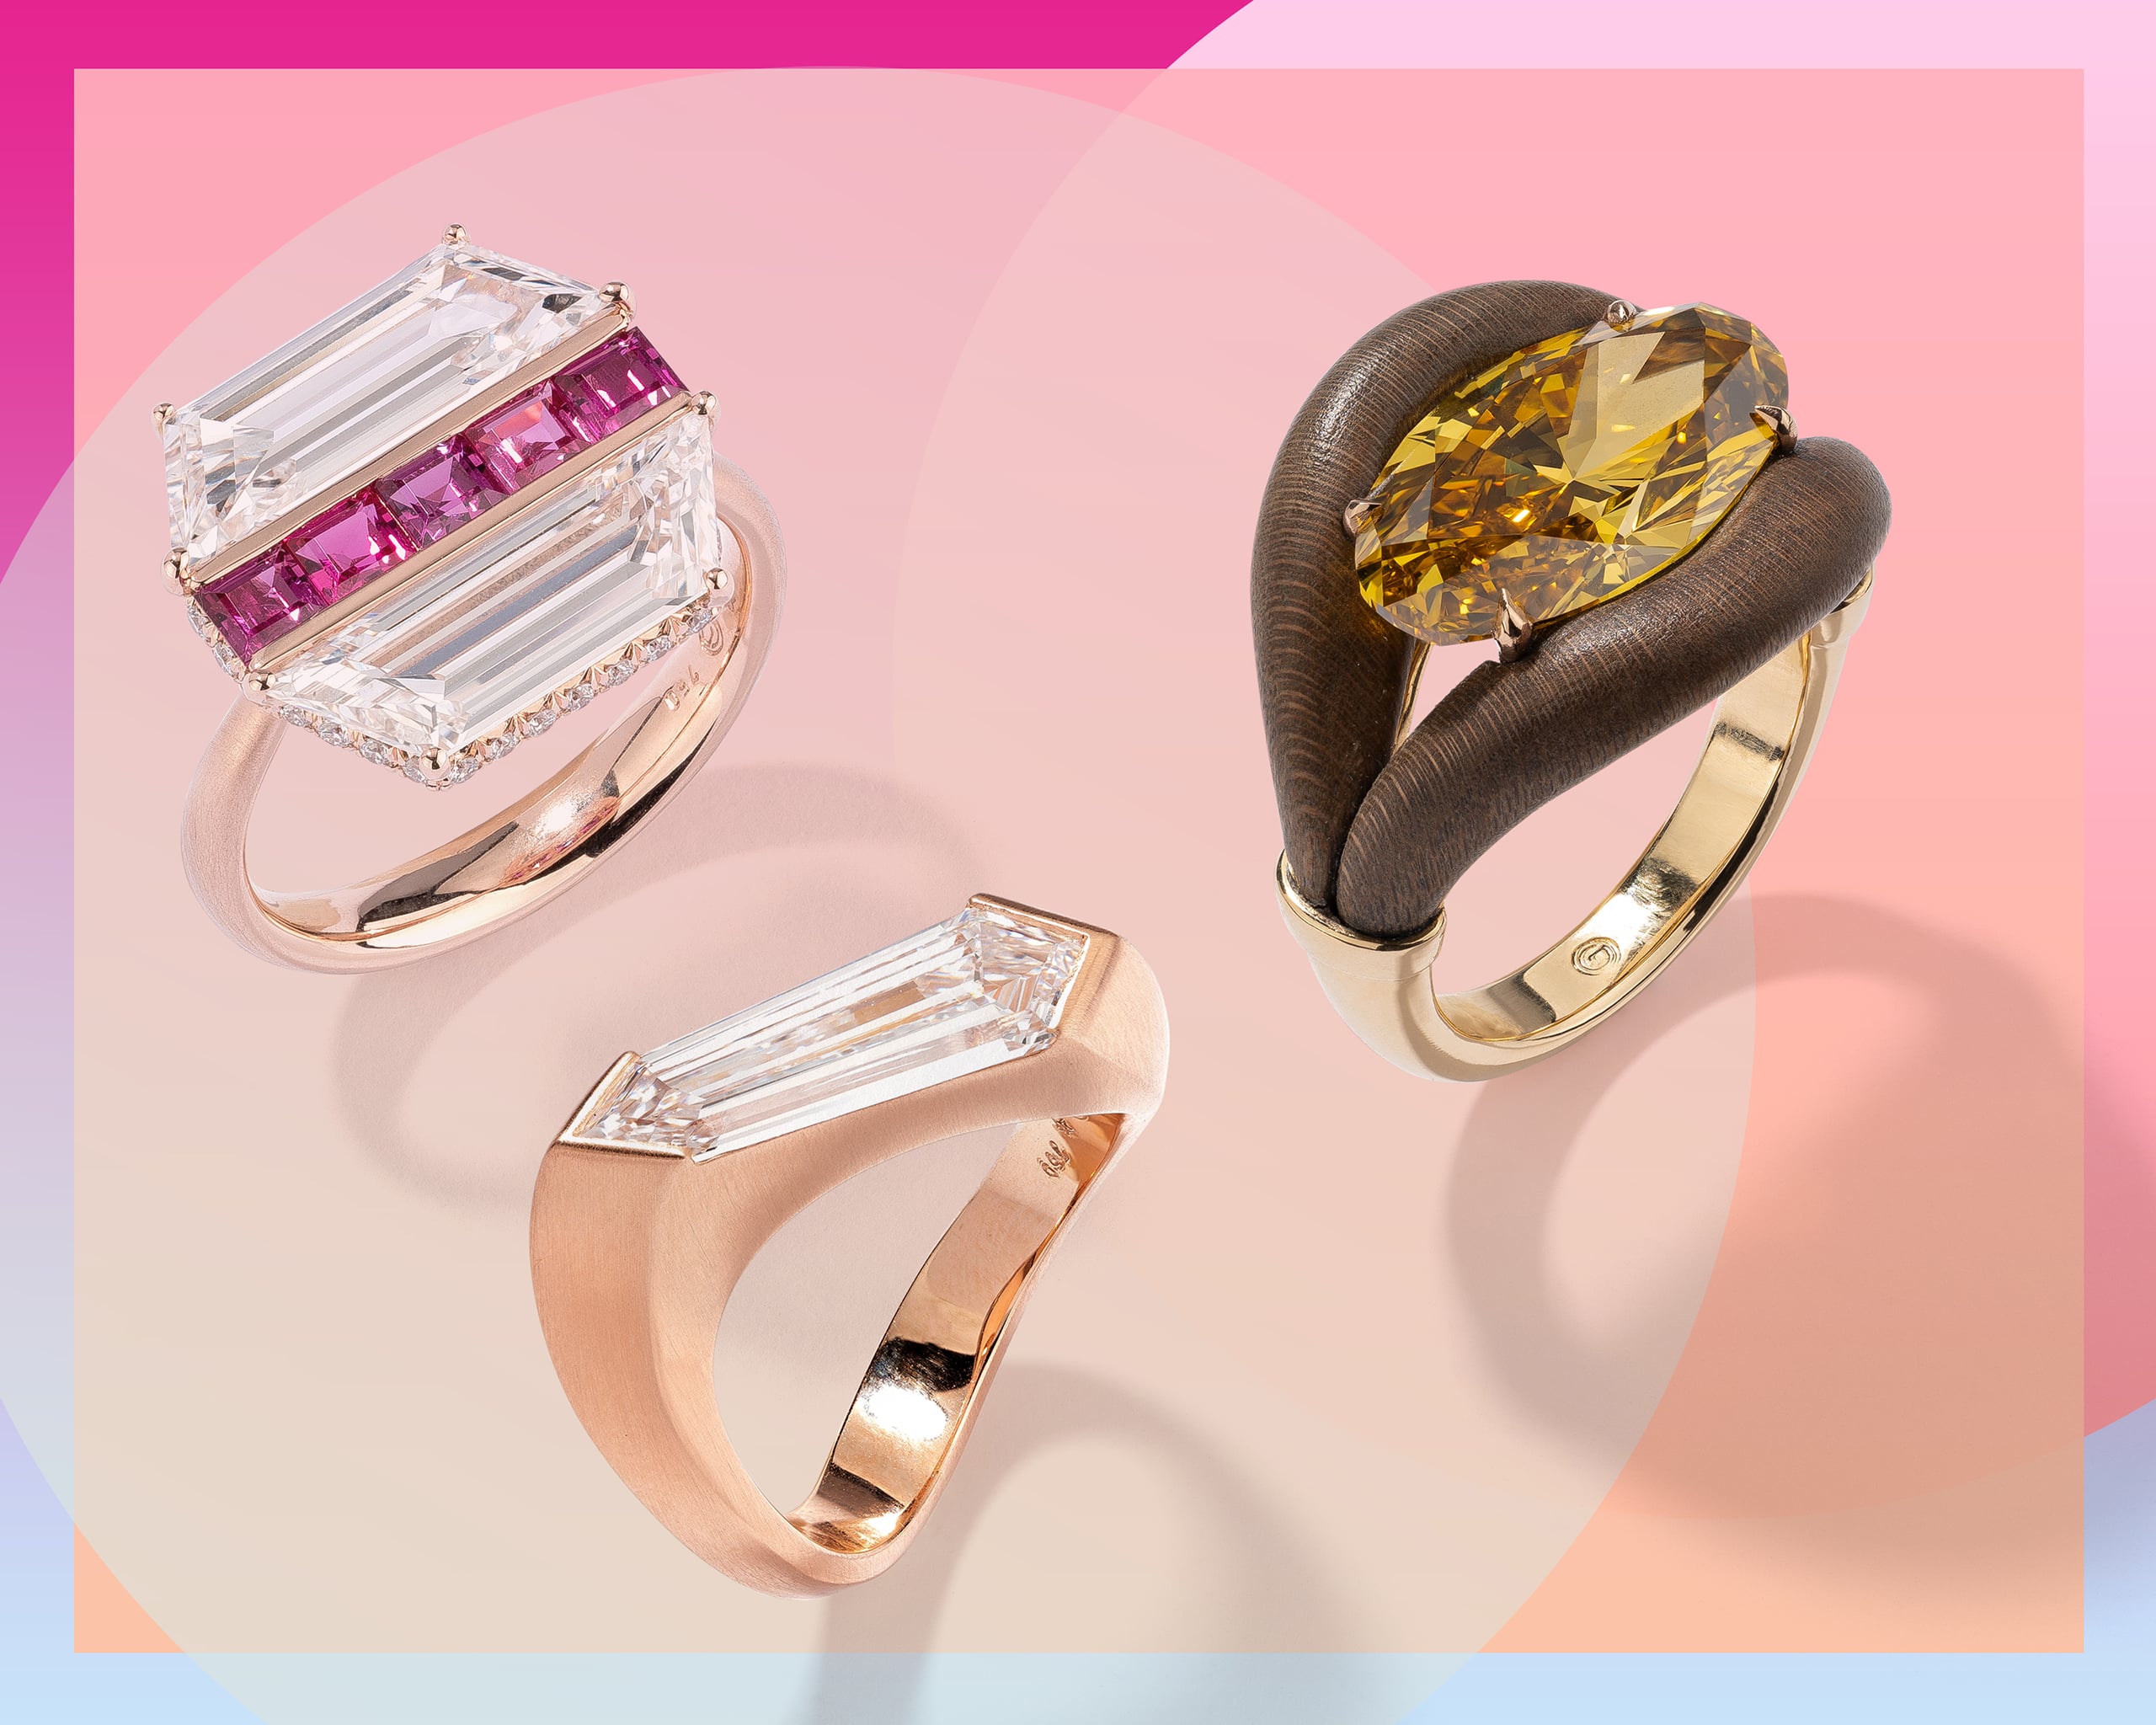 Cartier 18 Karat Gold Diamond Ring | Cartier engagement ring gold, Gold ring  designs, Engagement rings cartier